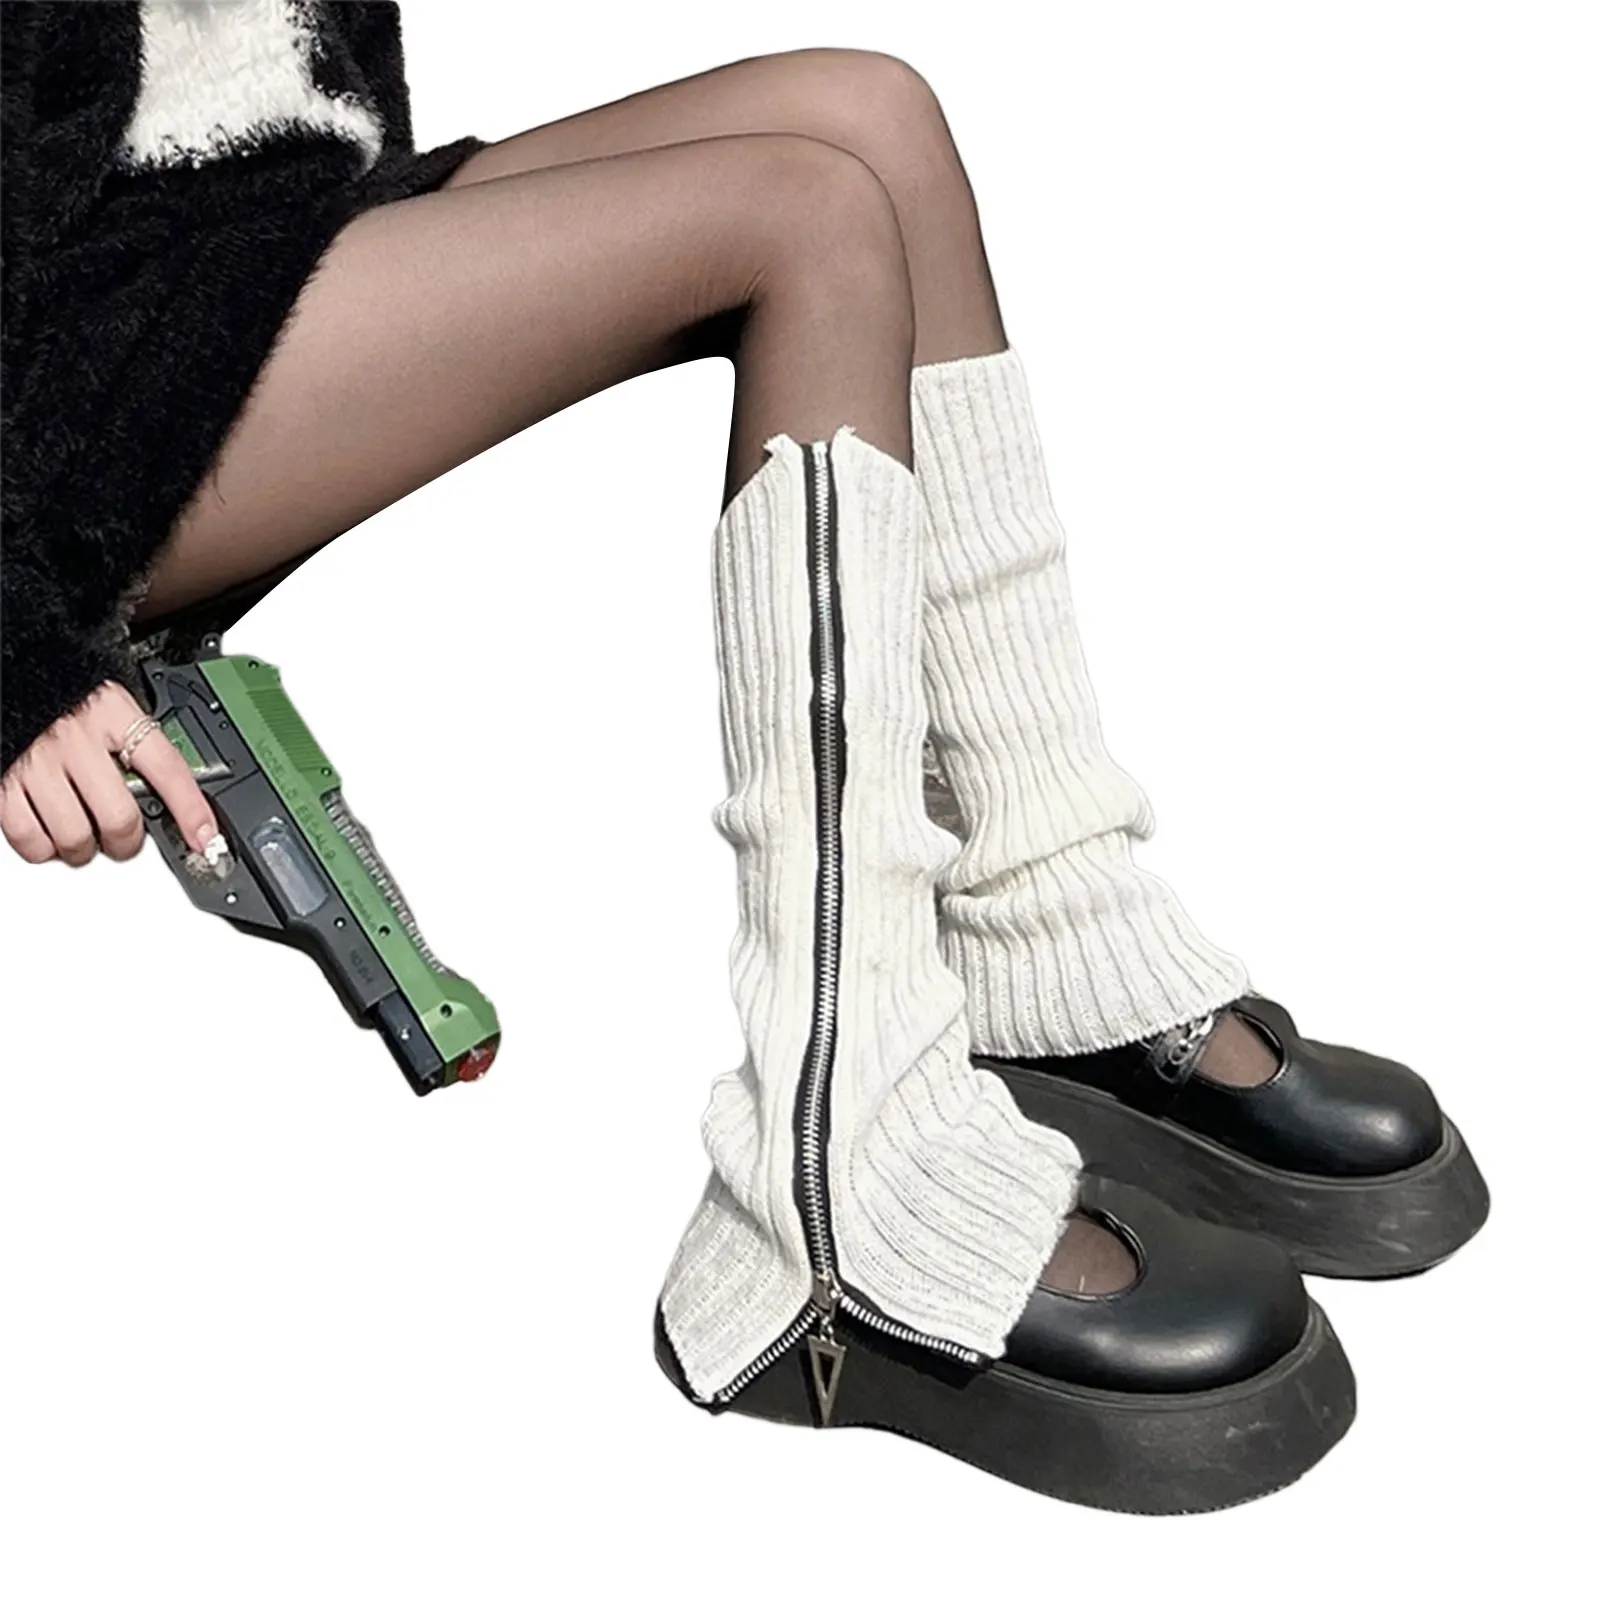 חדש Y2K בגדי נשים סרוגים רגל מחממי הברך גבוה אביזרי סגנון מחוספס מחממי רגליים על בנות בגיל העשרה - 4